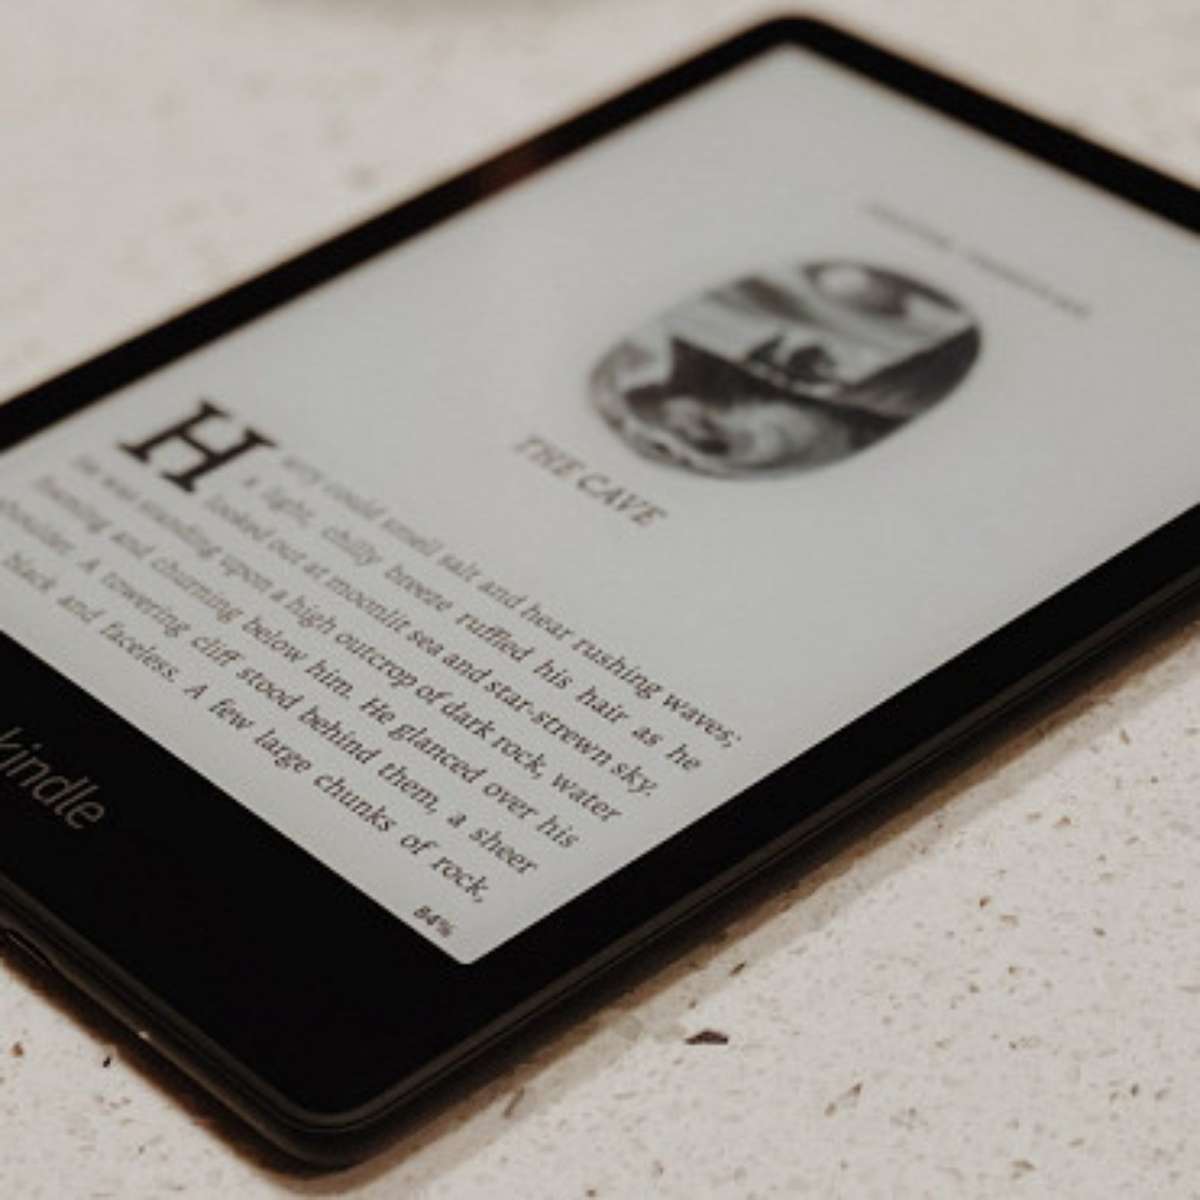 Novo Kindle basicão com luz para ler no escuro chega ao Brasil por